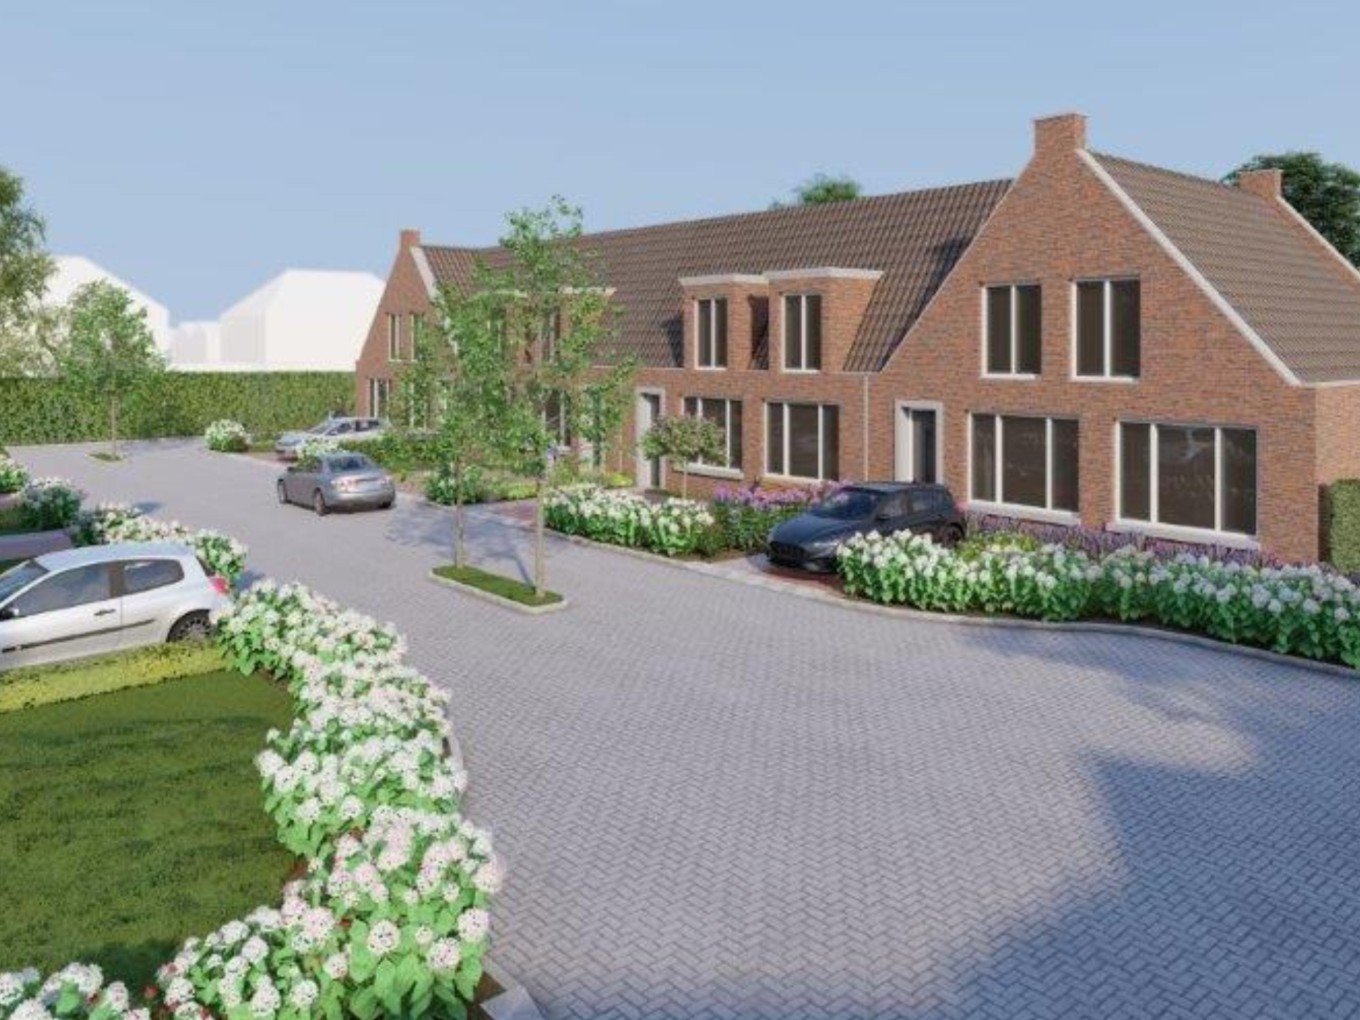 Groen licht voor nieuwe woningbouwplannen in Nieuwleusen